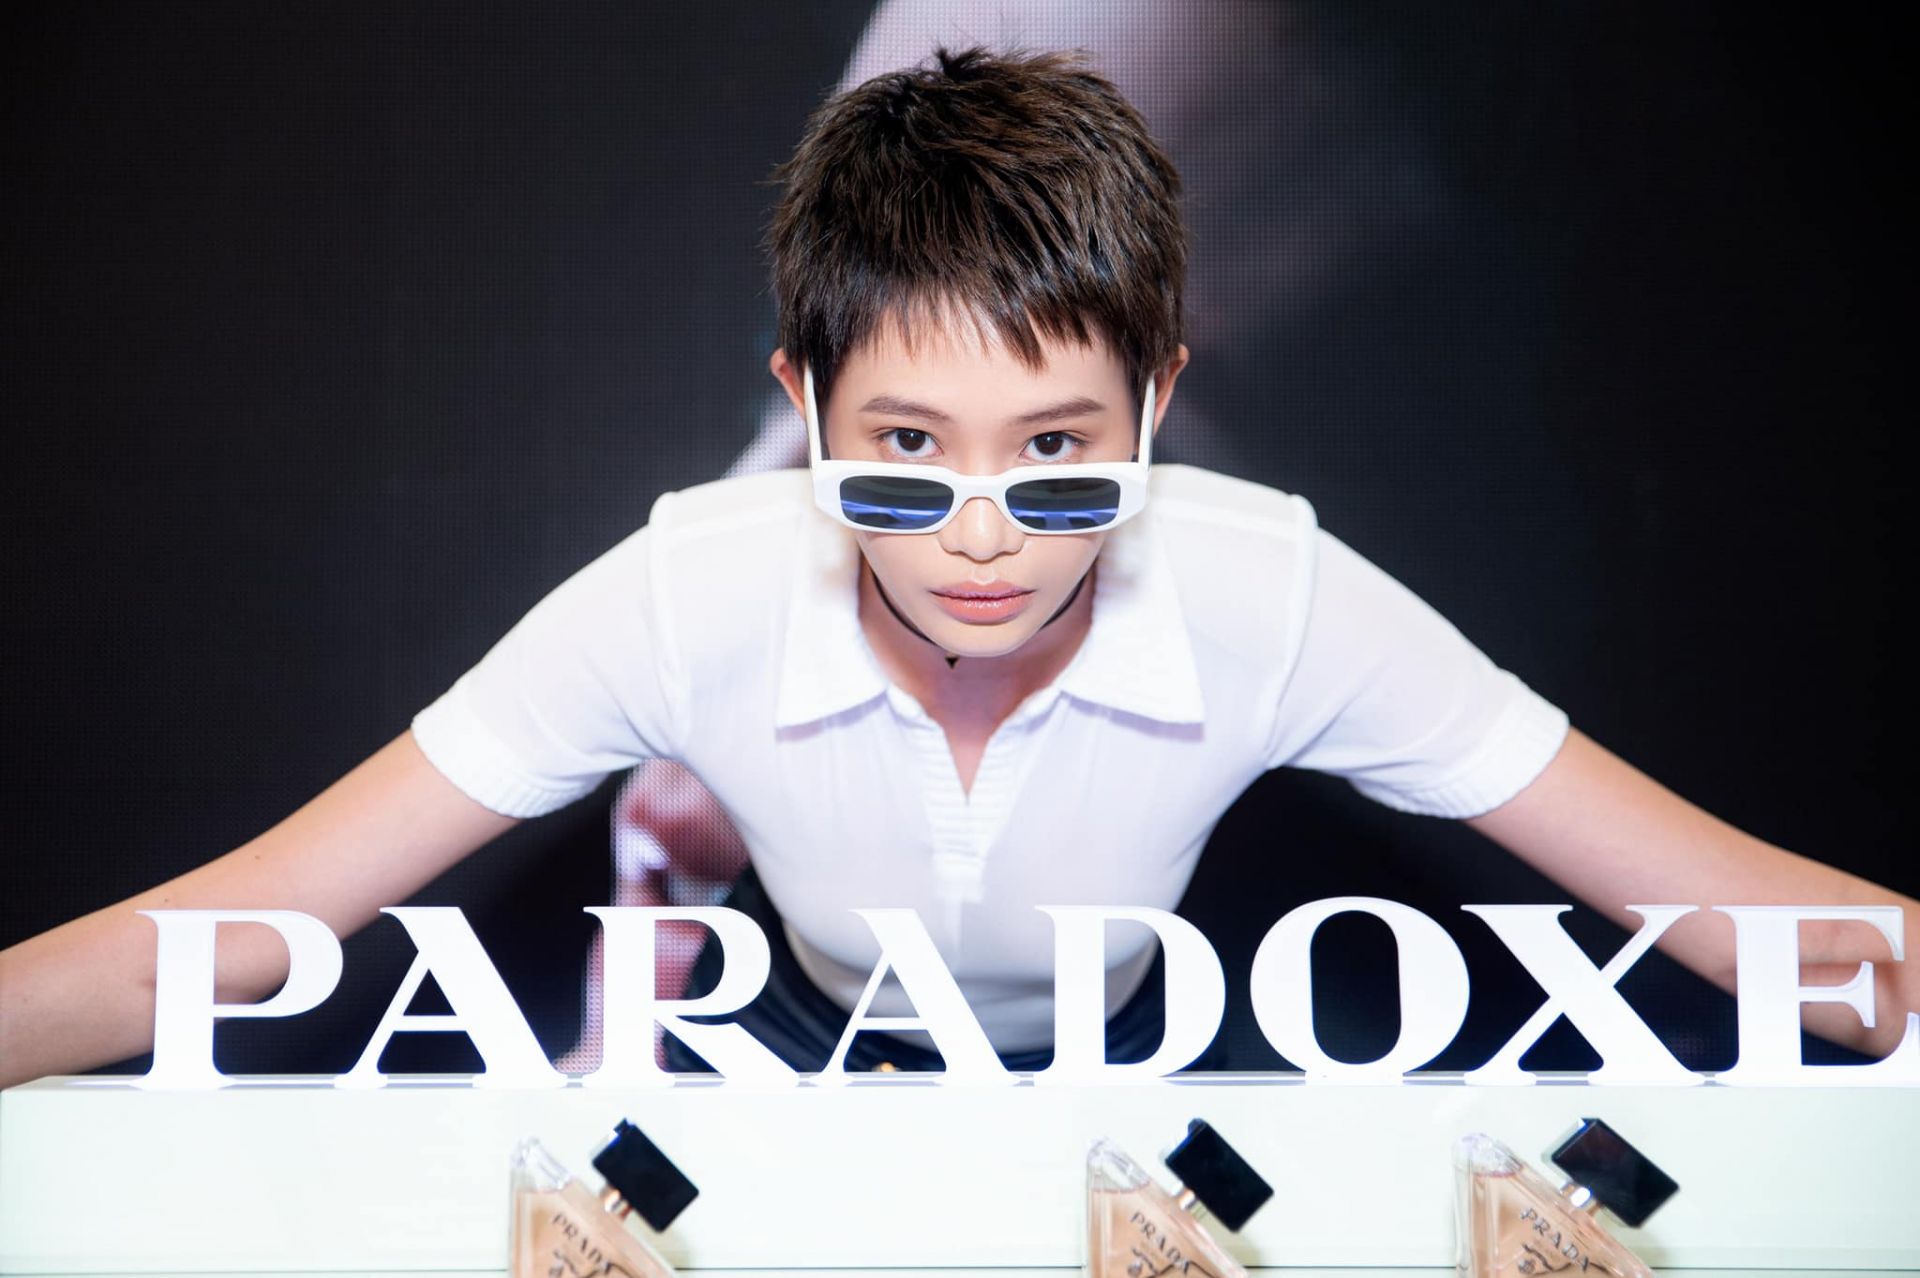 Prada Paradoxe